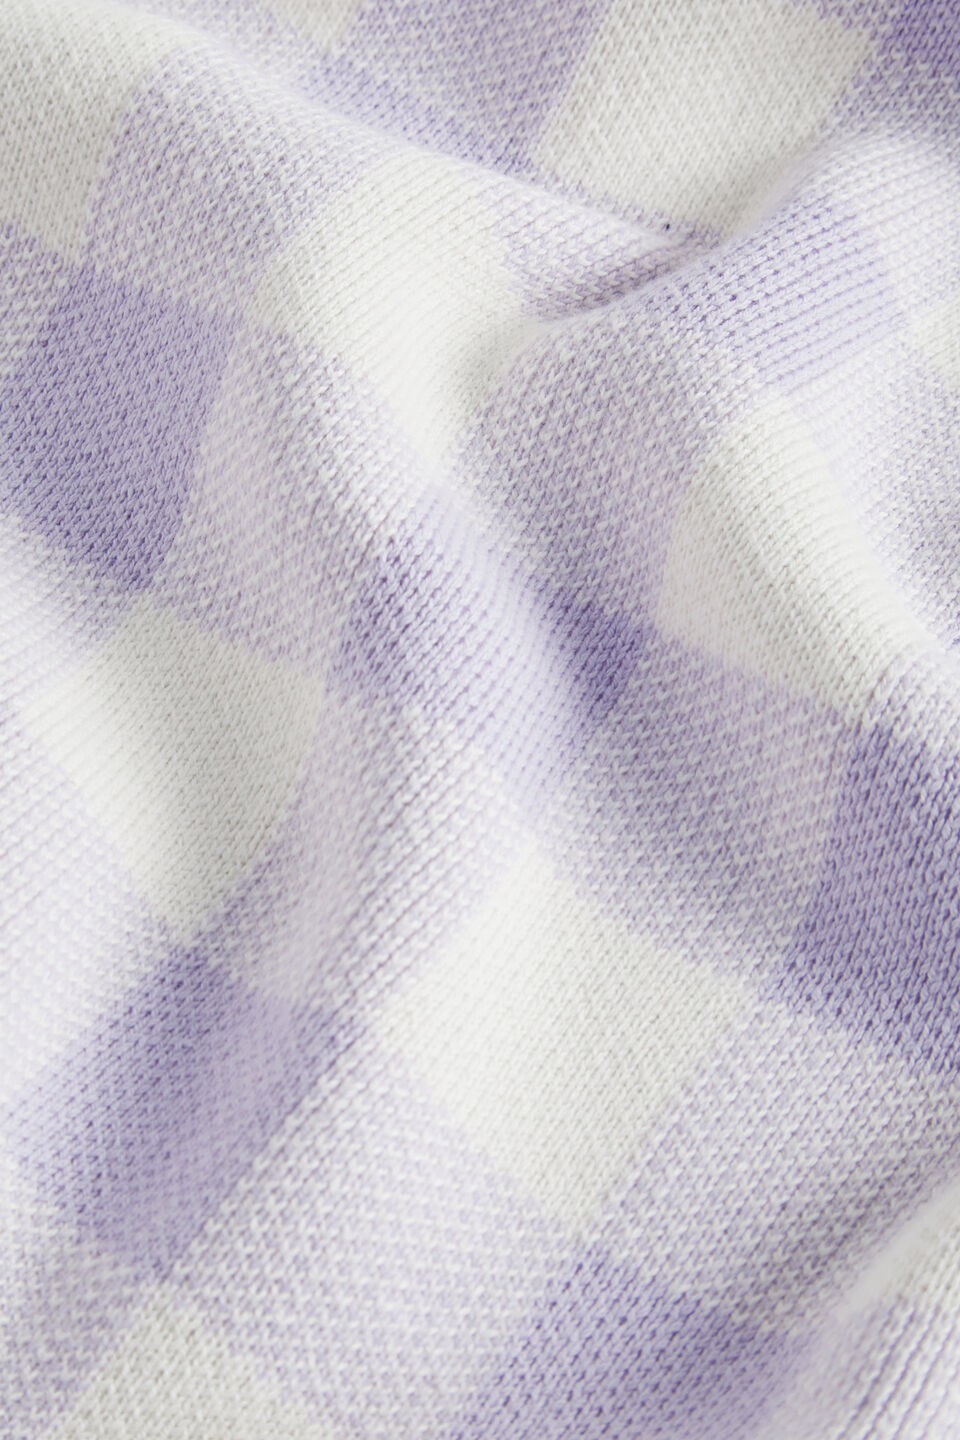 Gingham Knit Blanket  Lavender